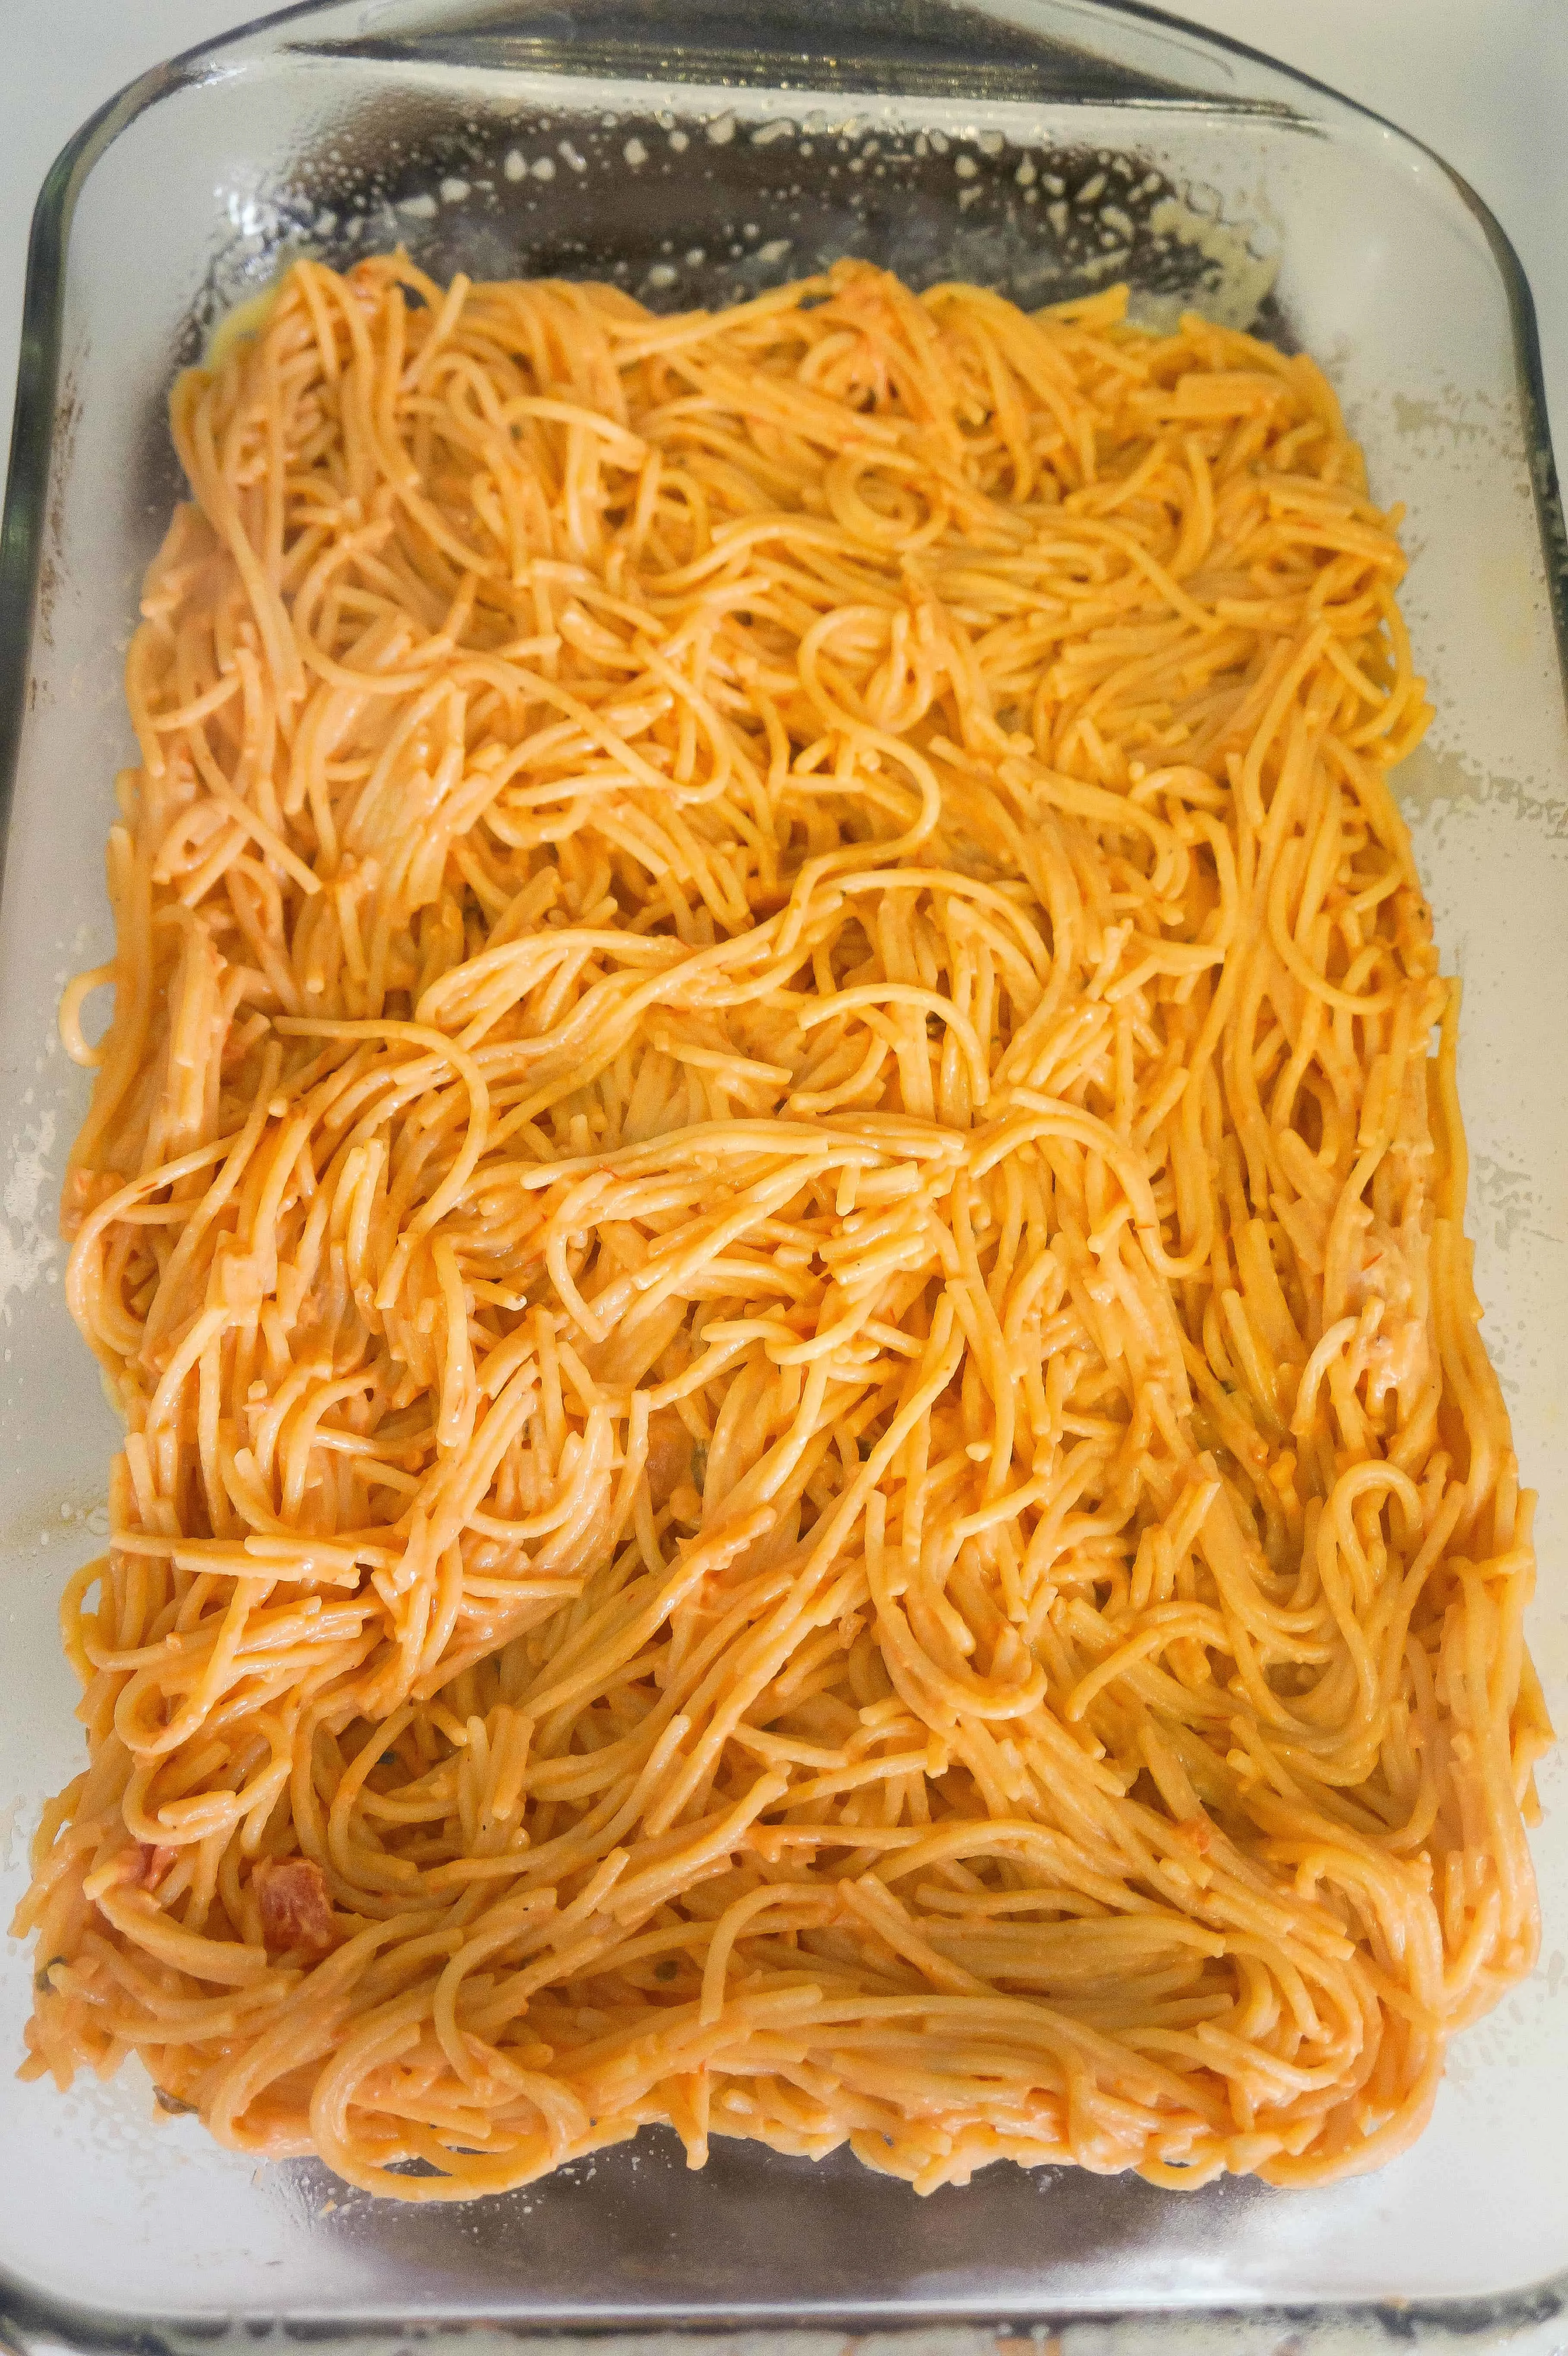 spaghetti in a baking dish